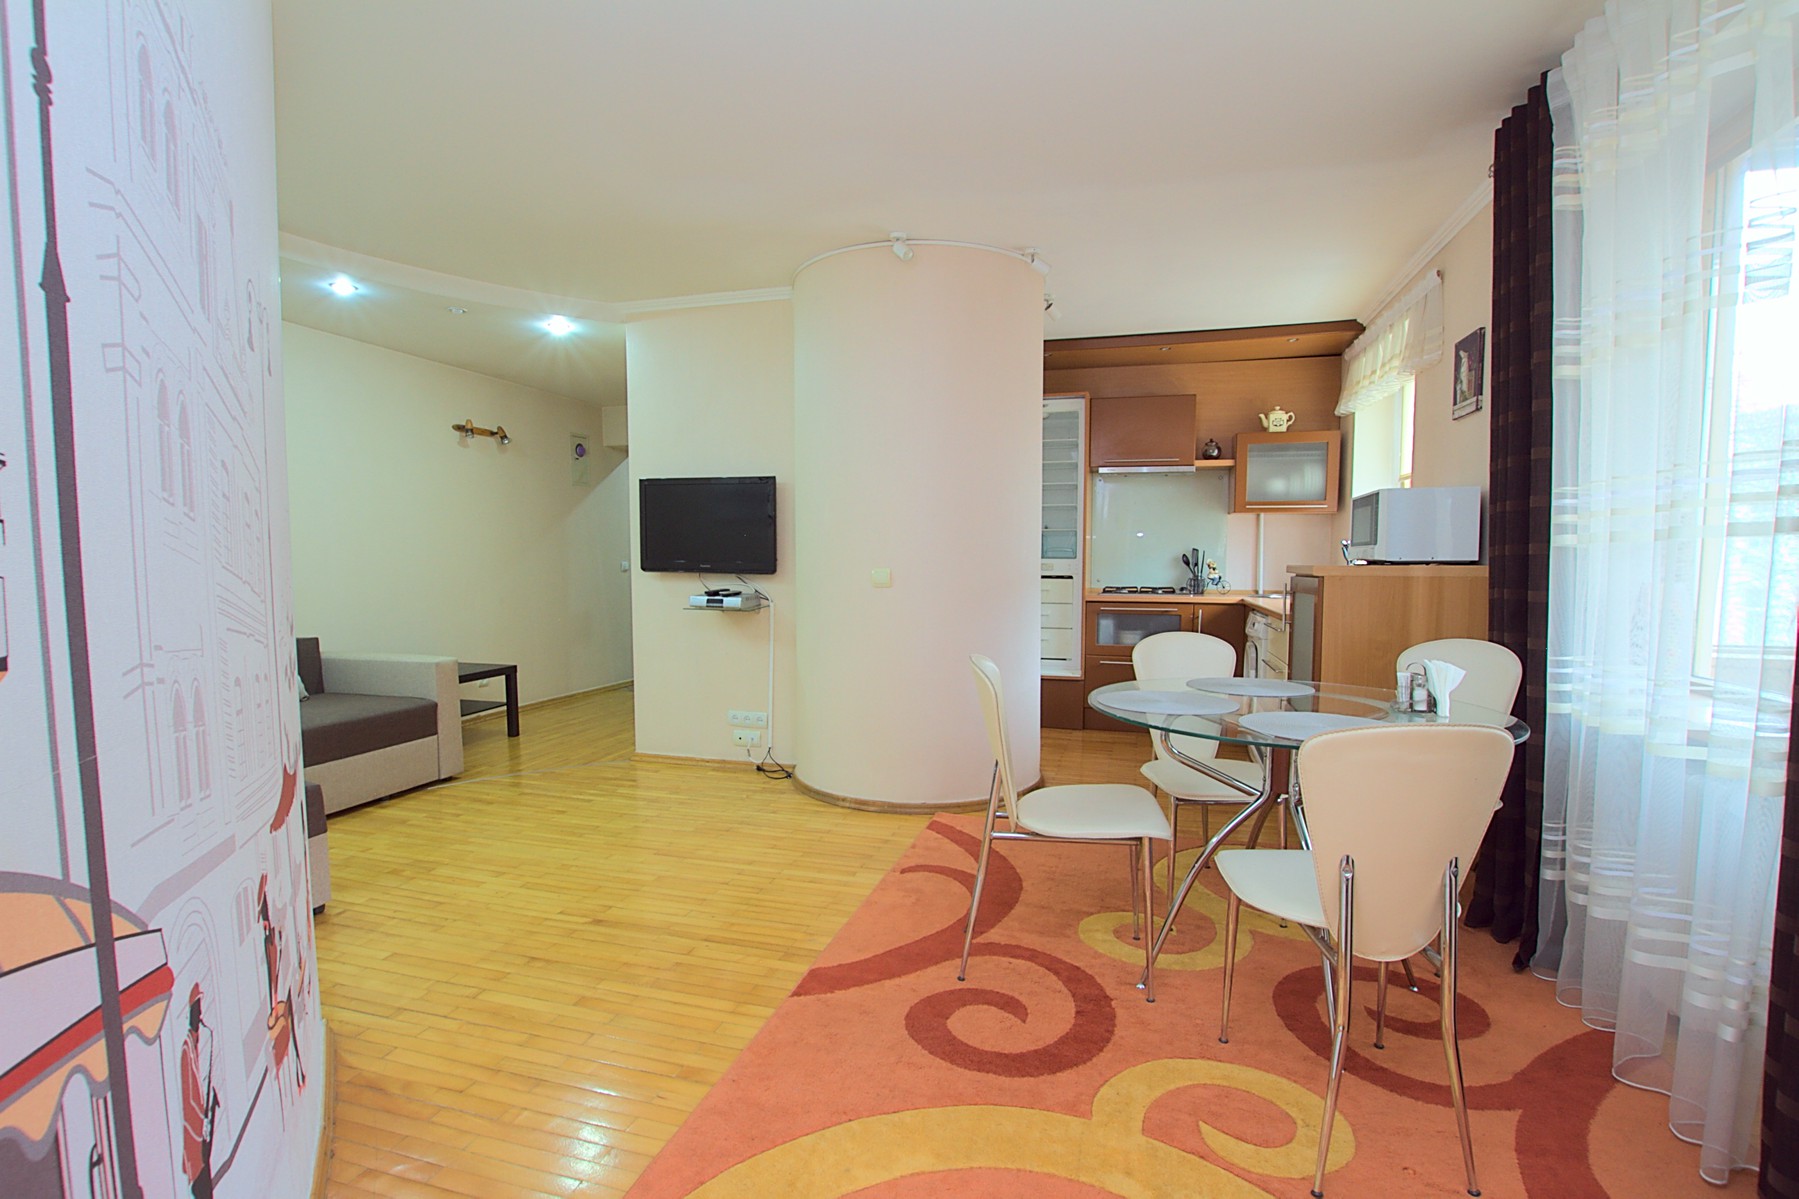 Favorita Apartment это квартира в аренду в Кишиневе имеющая 2 комнаты в аренду в Кишиневе - Chisinau, Moldova